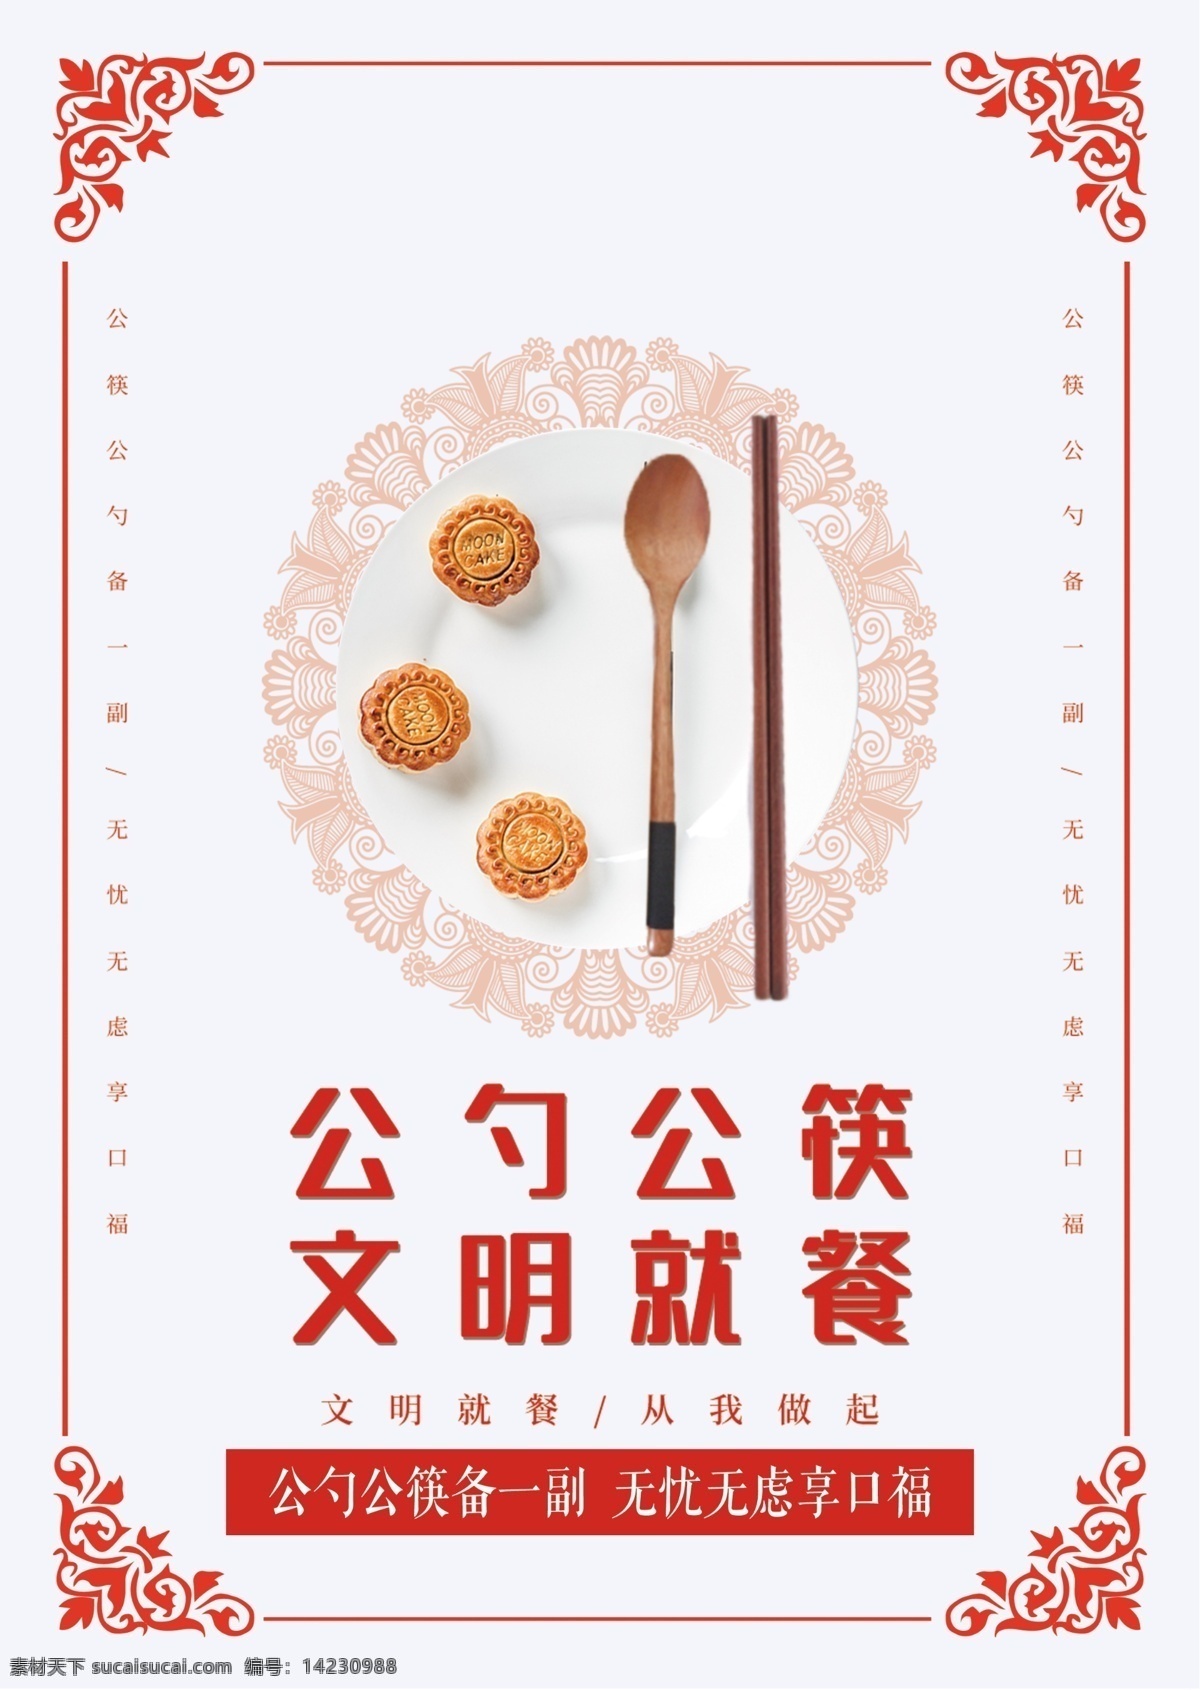 文明用餐 公勺公筷 文化健康 文明就餐 公益海报 宣传